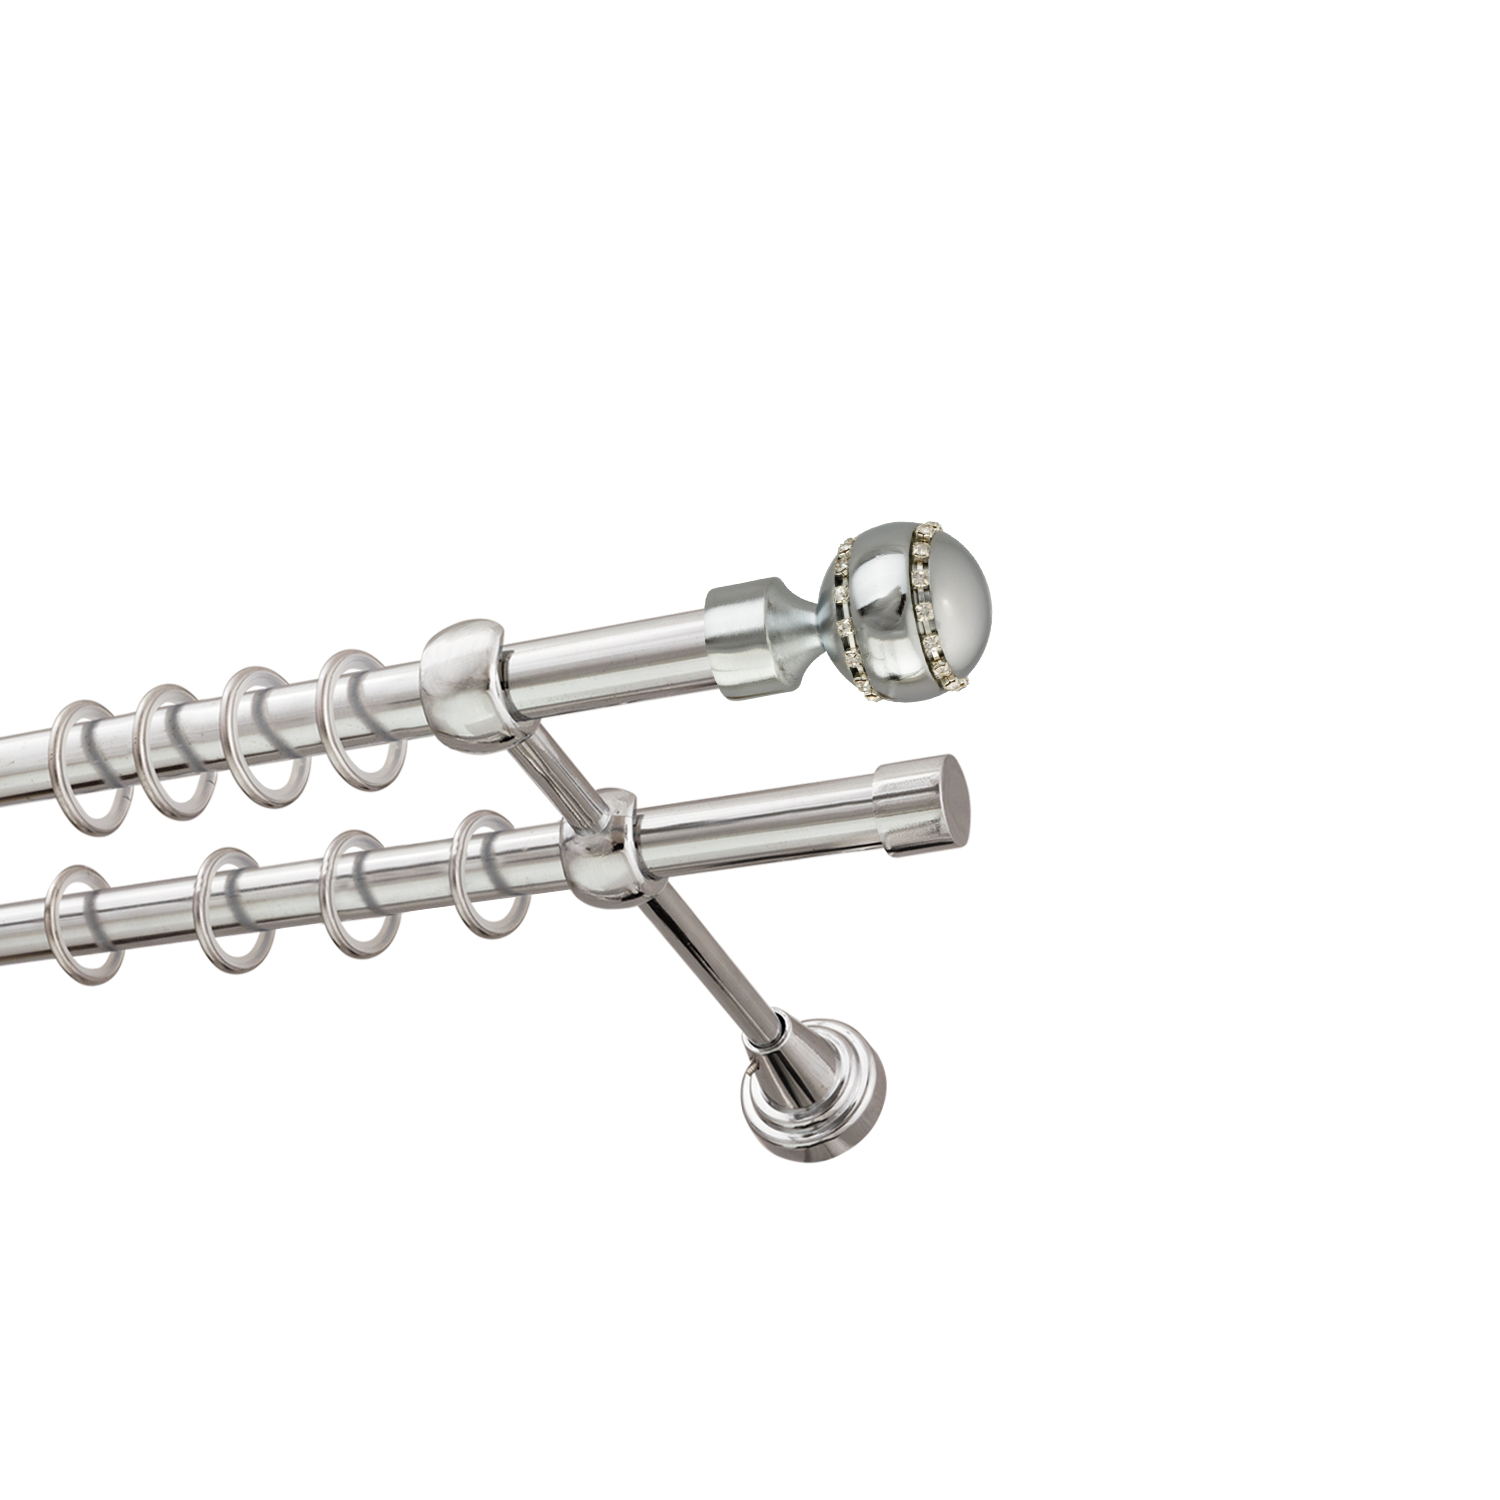 Металлический карниз для штор Модерн, двухрядный 16/16 мм, серебро, гладкая штанга, длина 160 см - фото Wikidecor.ru